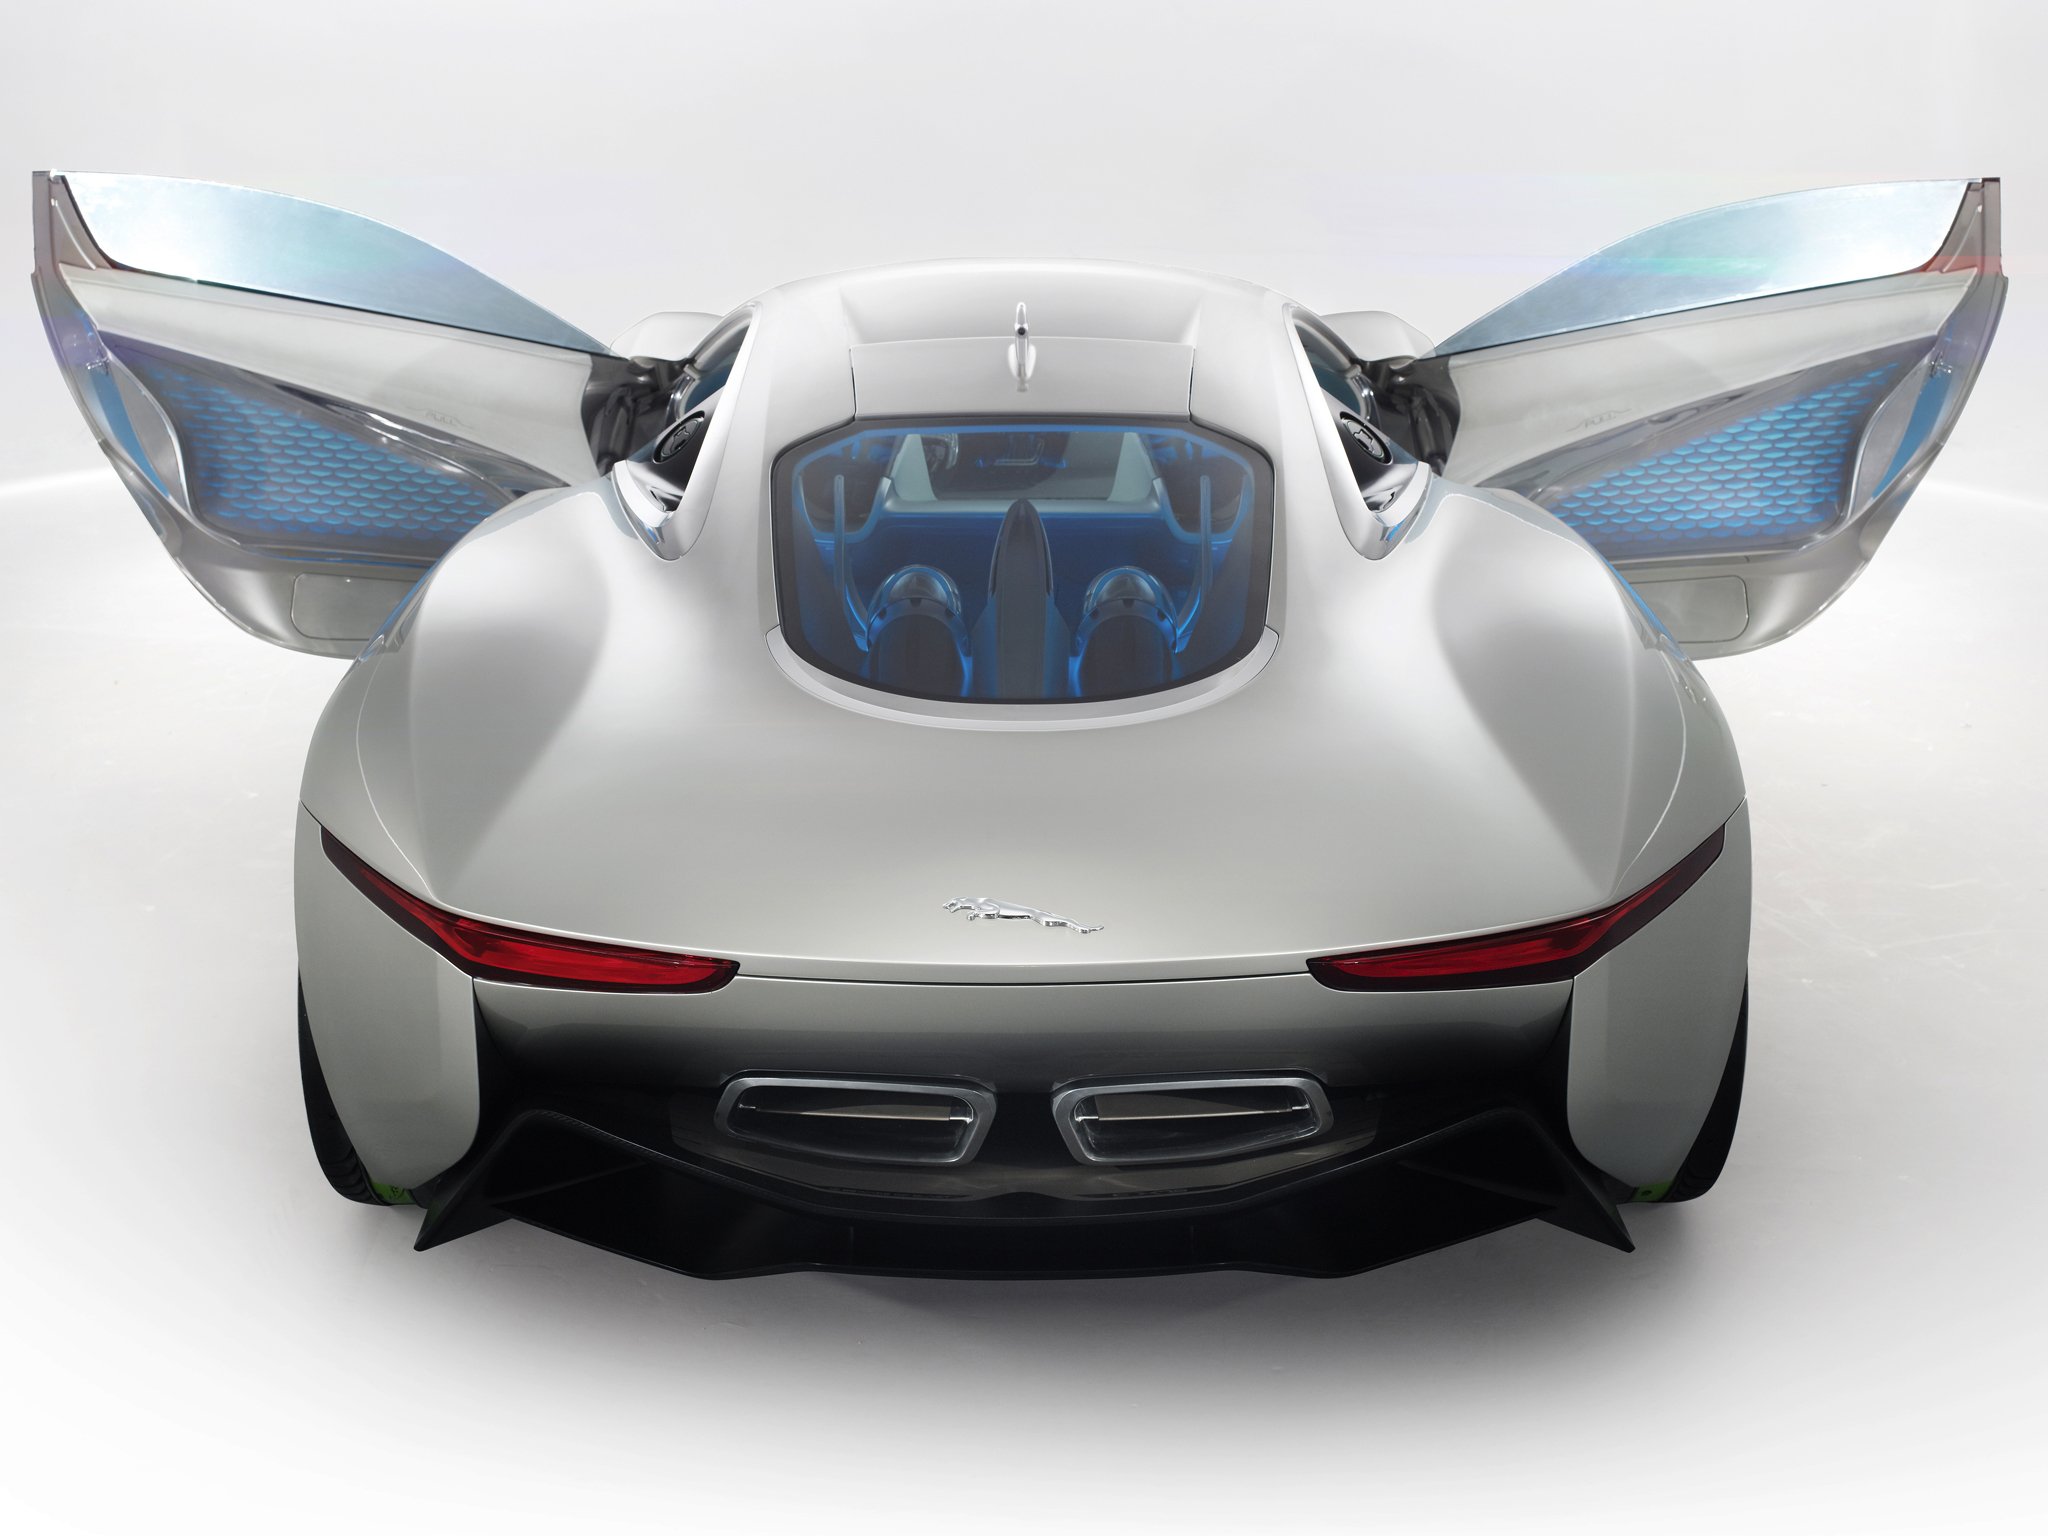 2010, Jaguar, C x75, Concept, Supercar, Interior Wallpaper